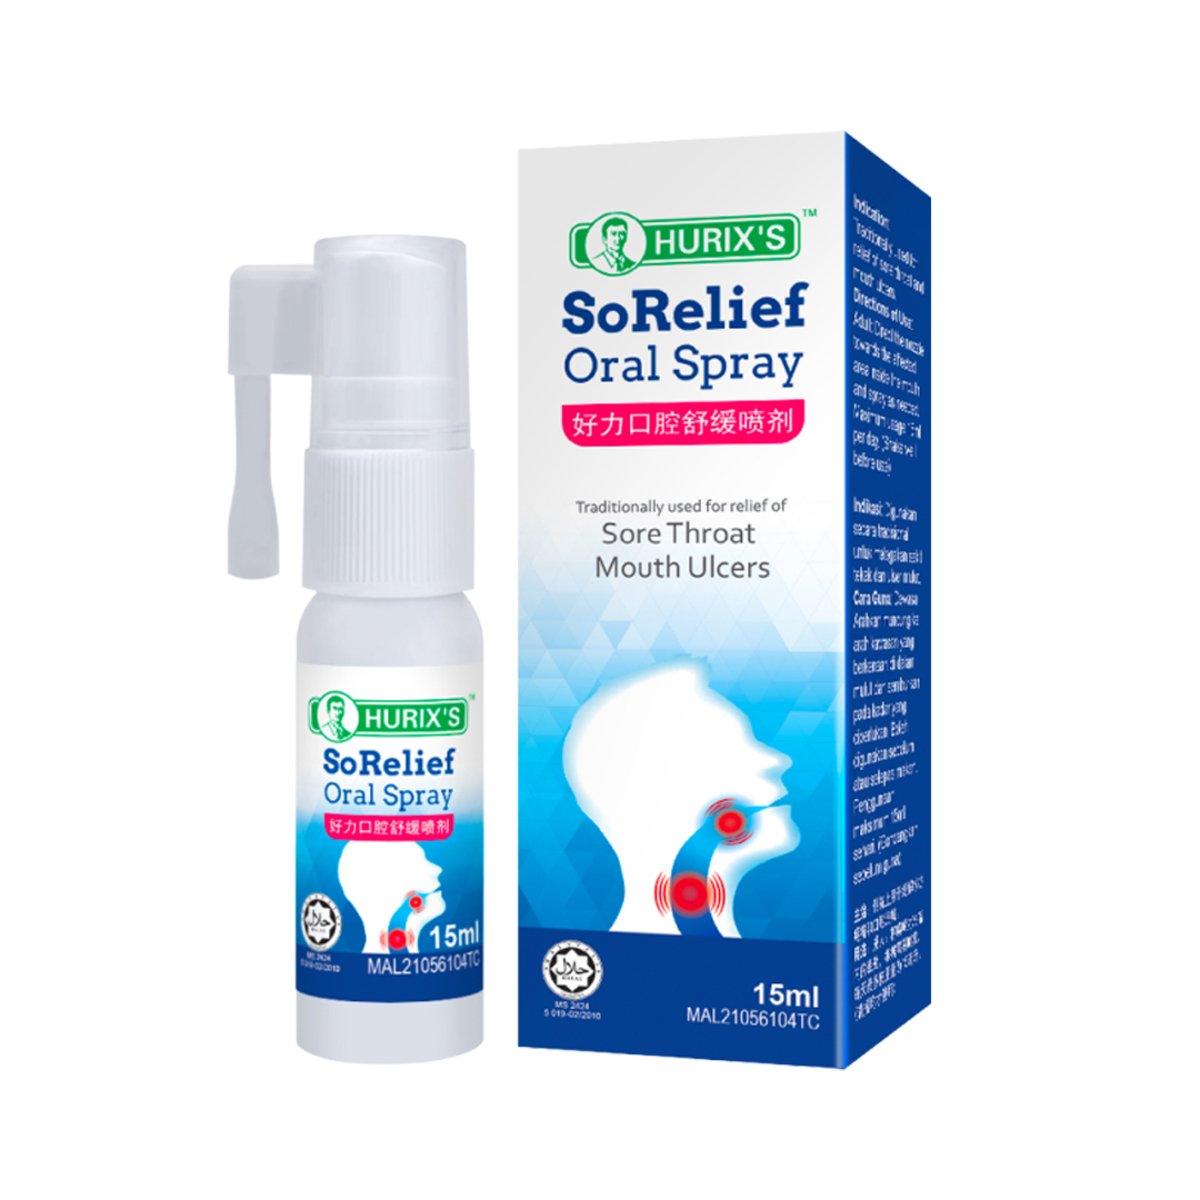 Hurix's Sorelief Oral Spray 15ml